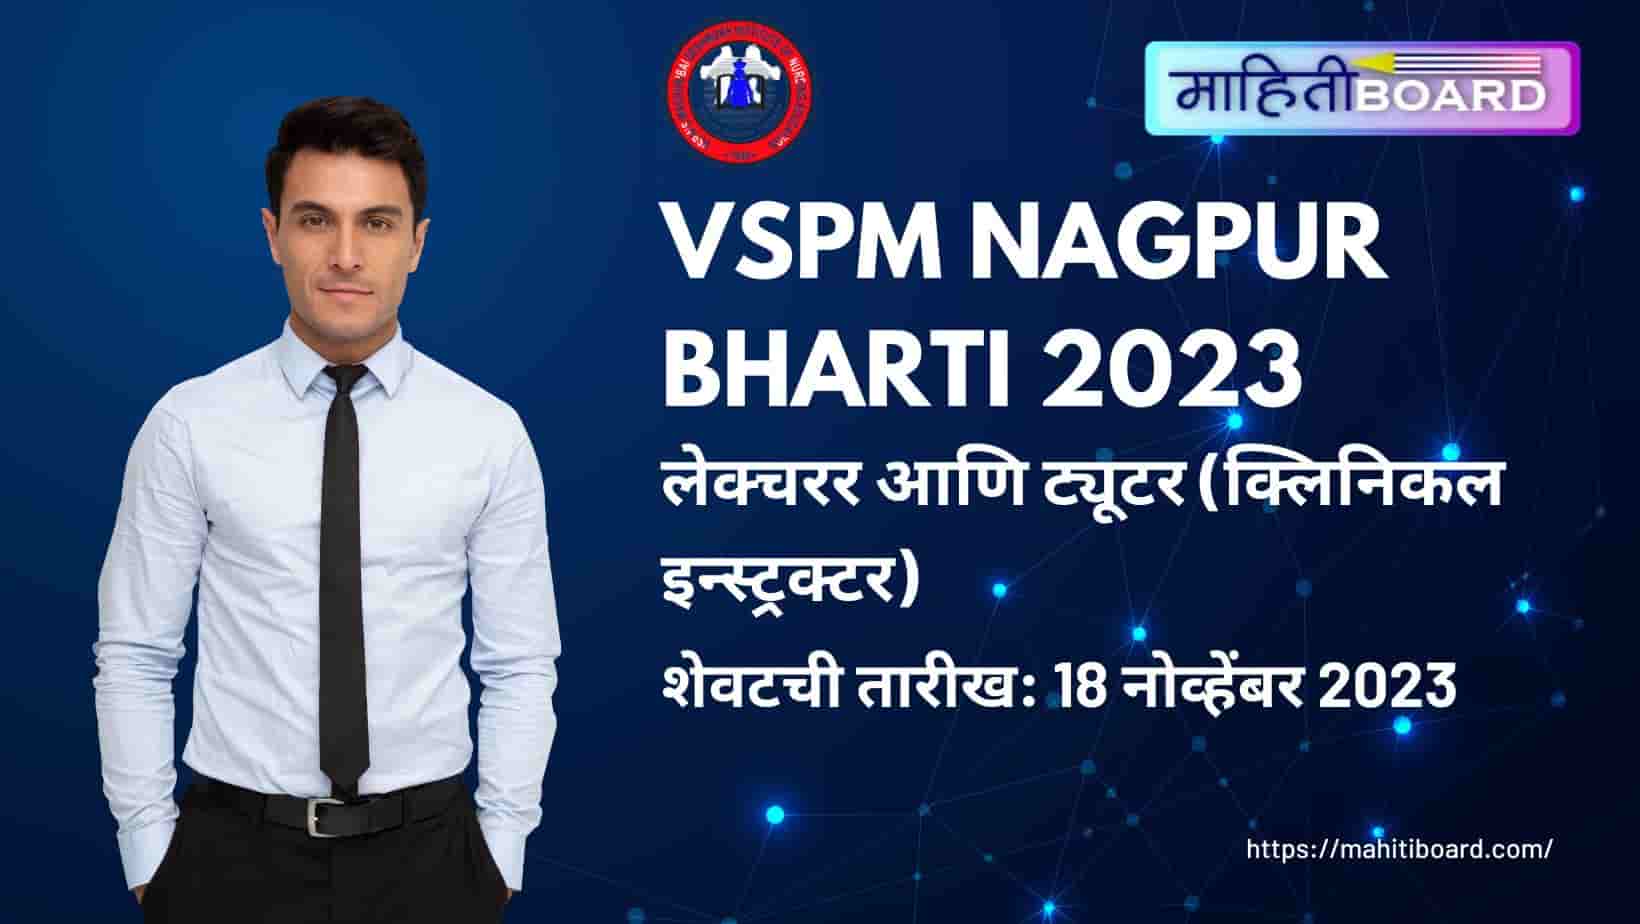 VSPM Nagpur Bharti 2023